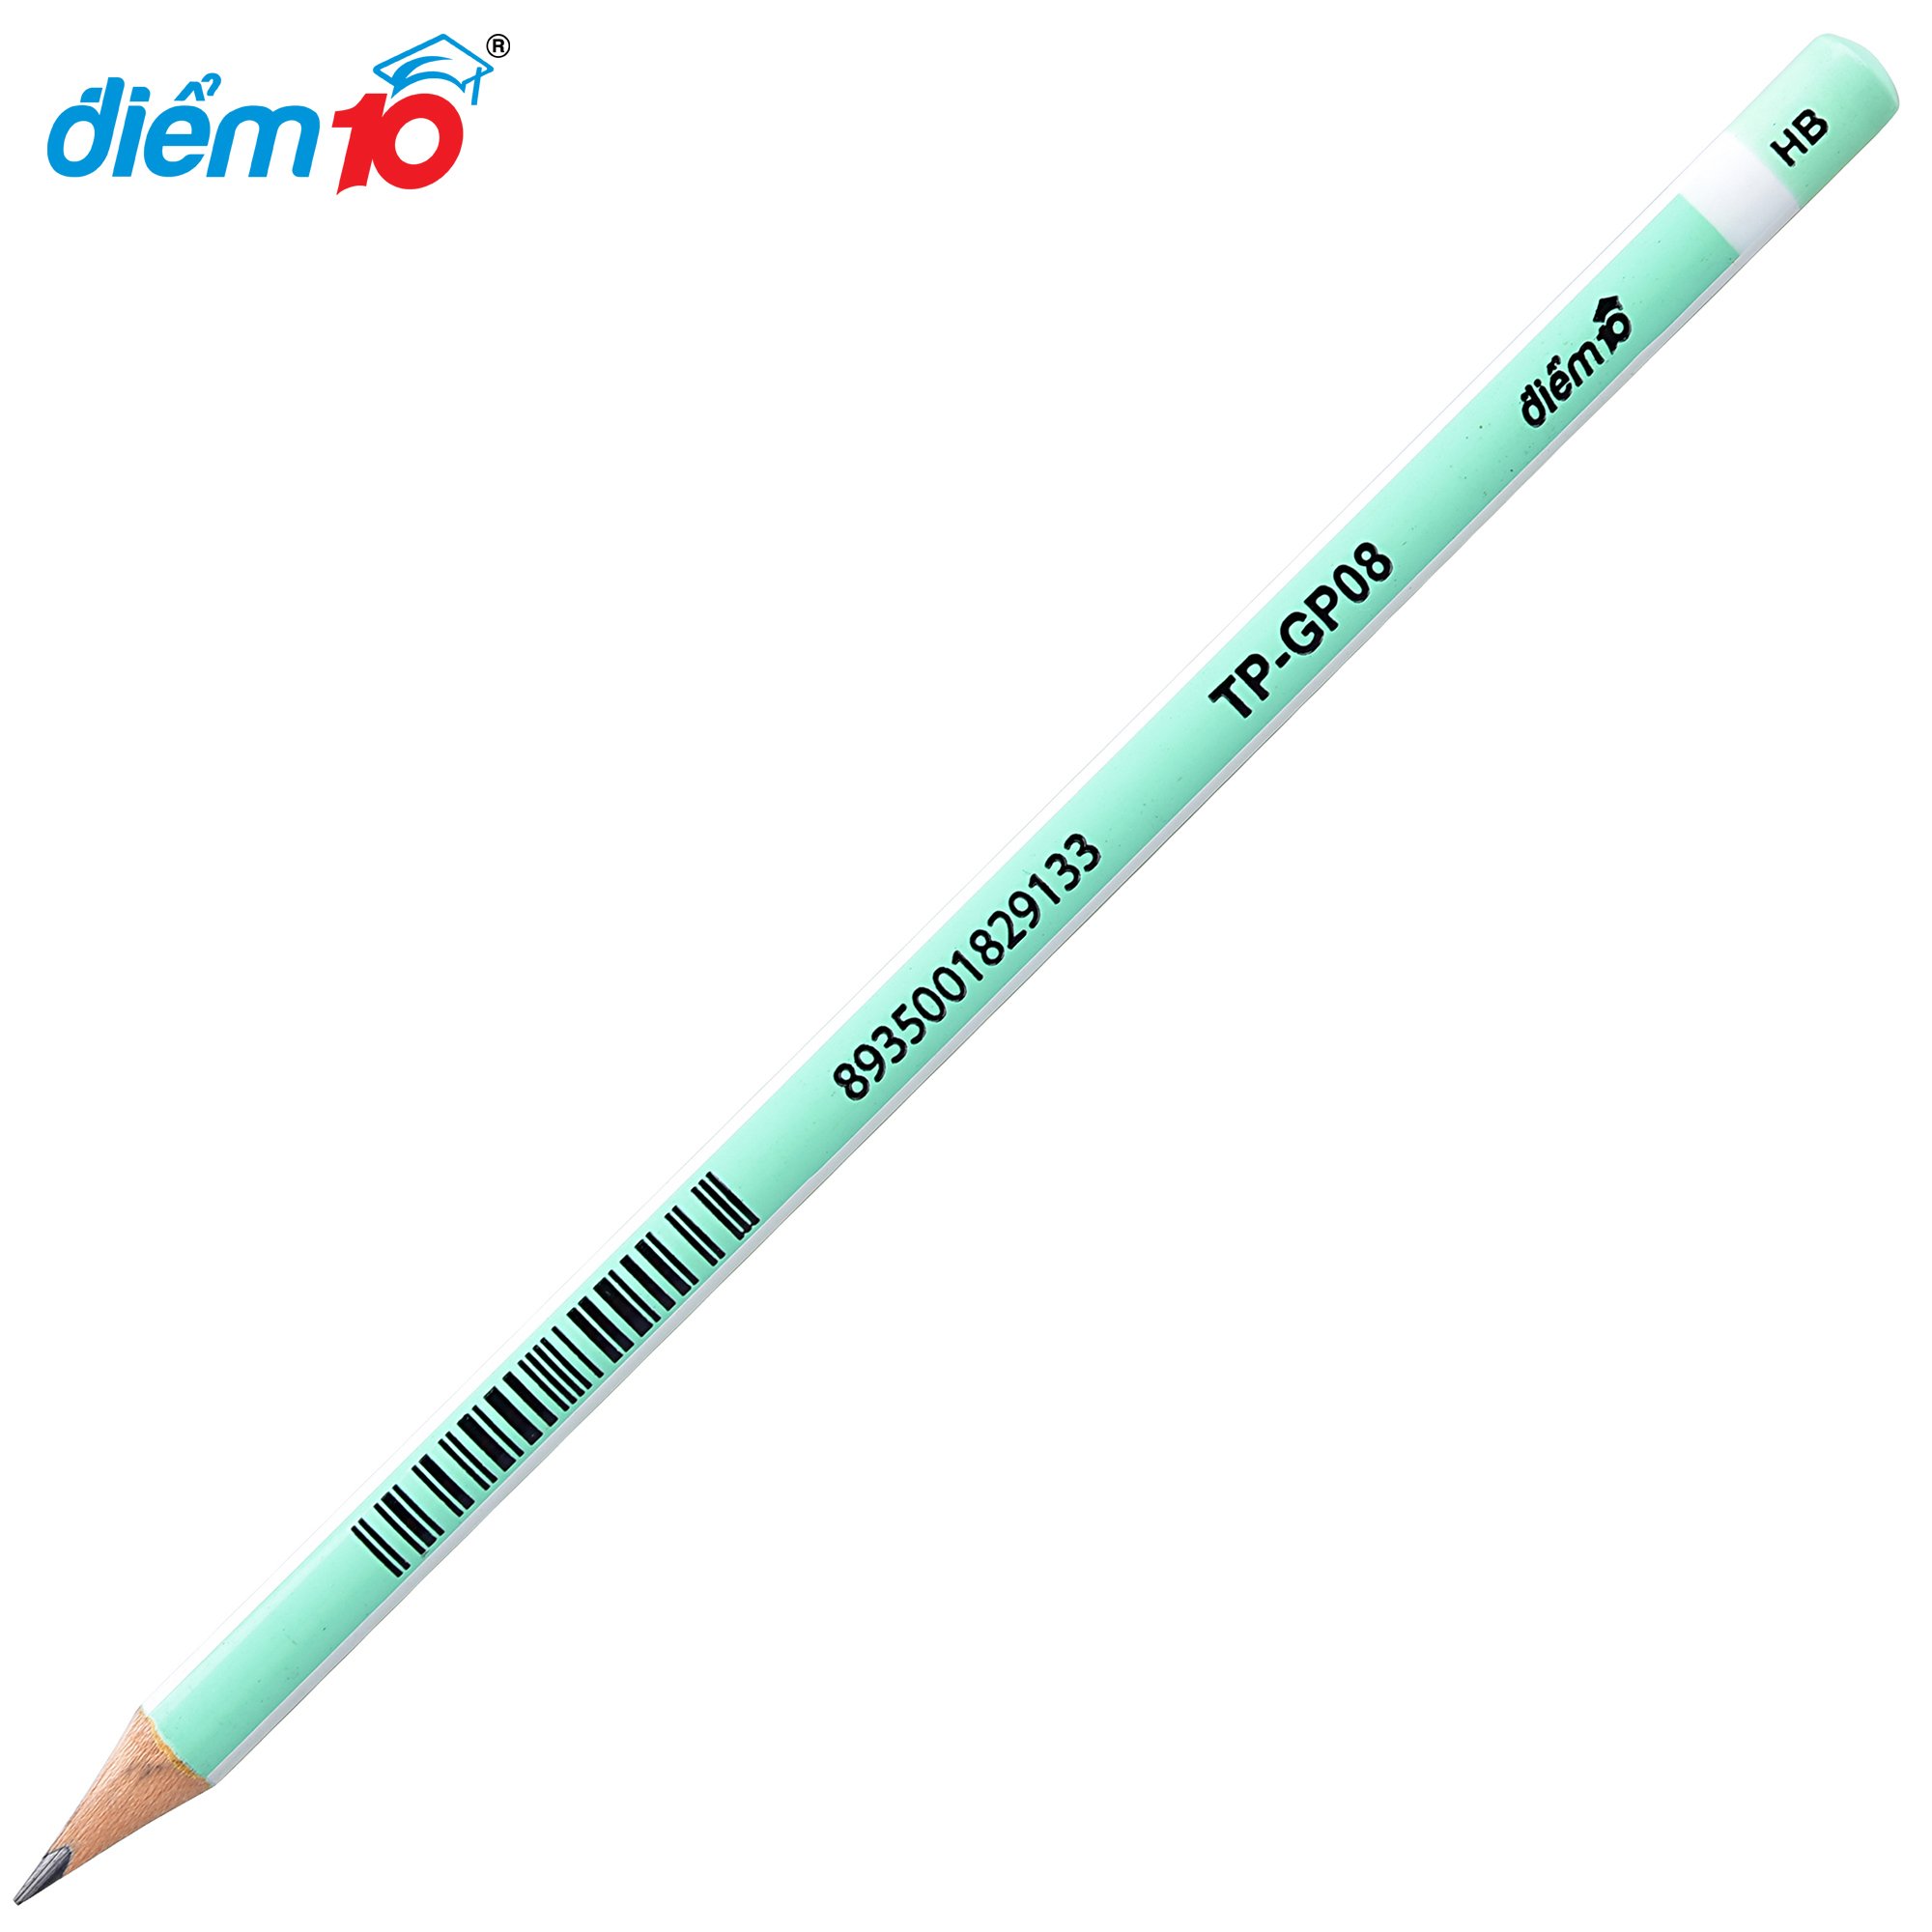 Bút chì gỗ Điểm 10 TP-GP08